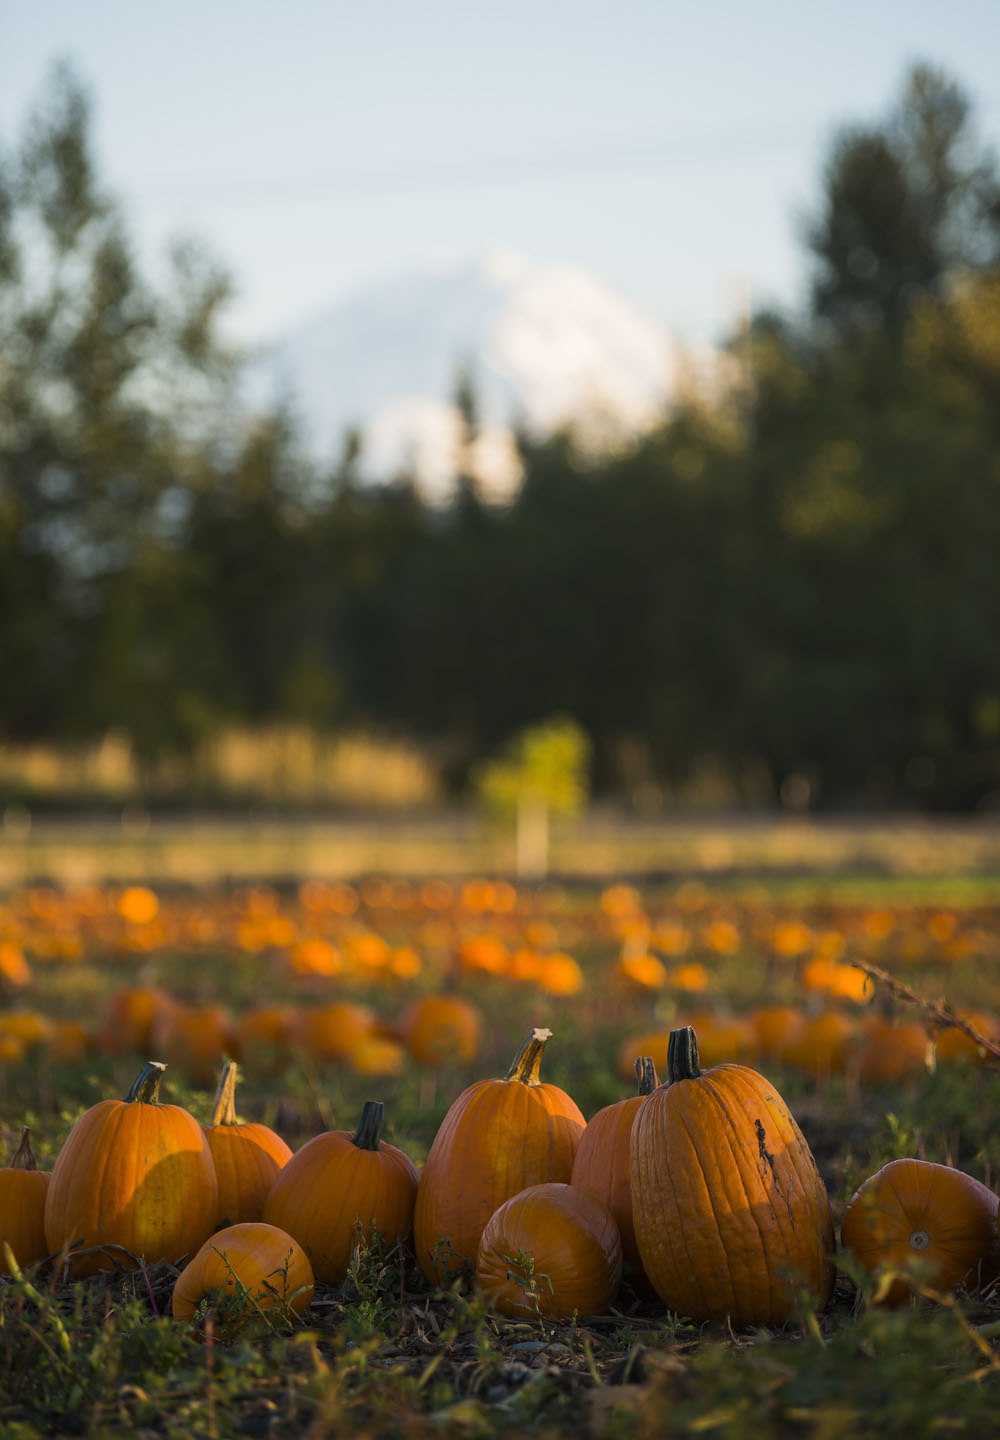 A line of pumpkins in a pumpkin patch